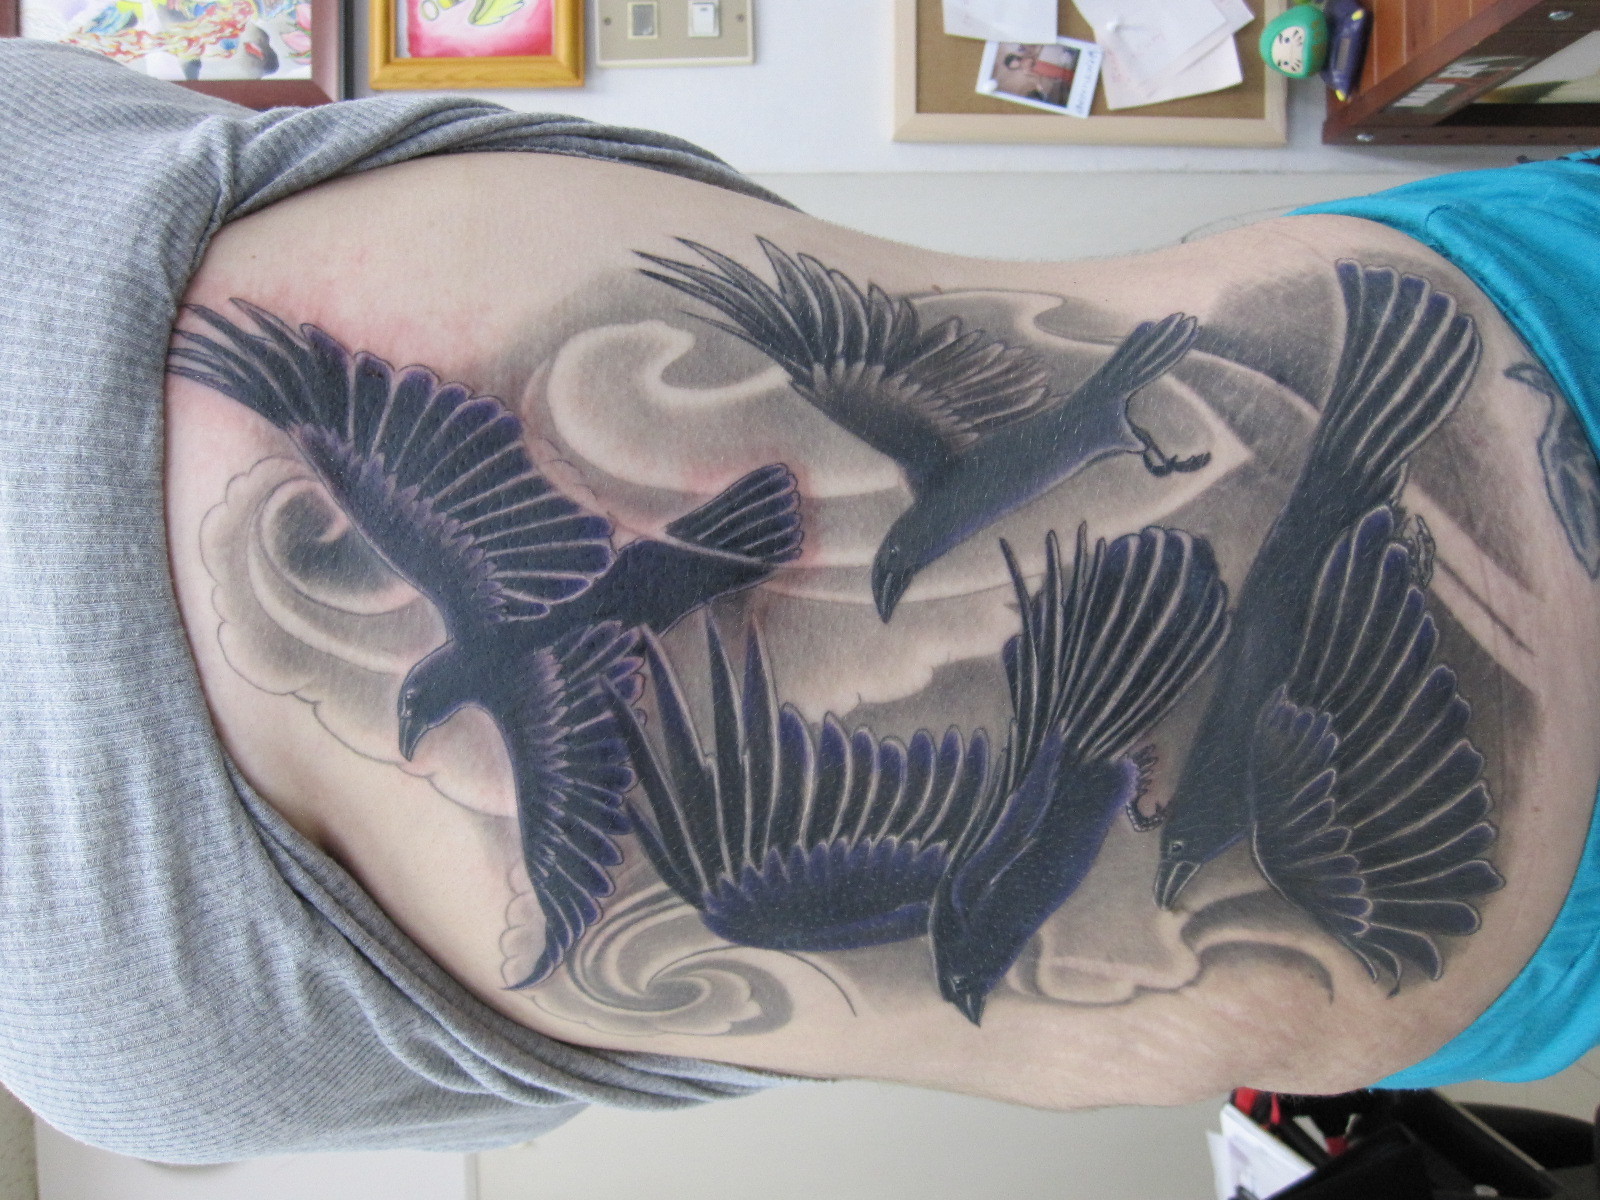 Crows tattoo - The con quạ người hâm mộ Art (16804858) - fanpop